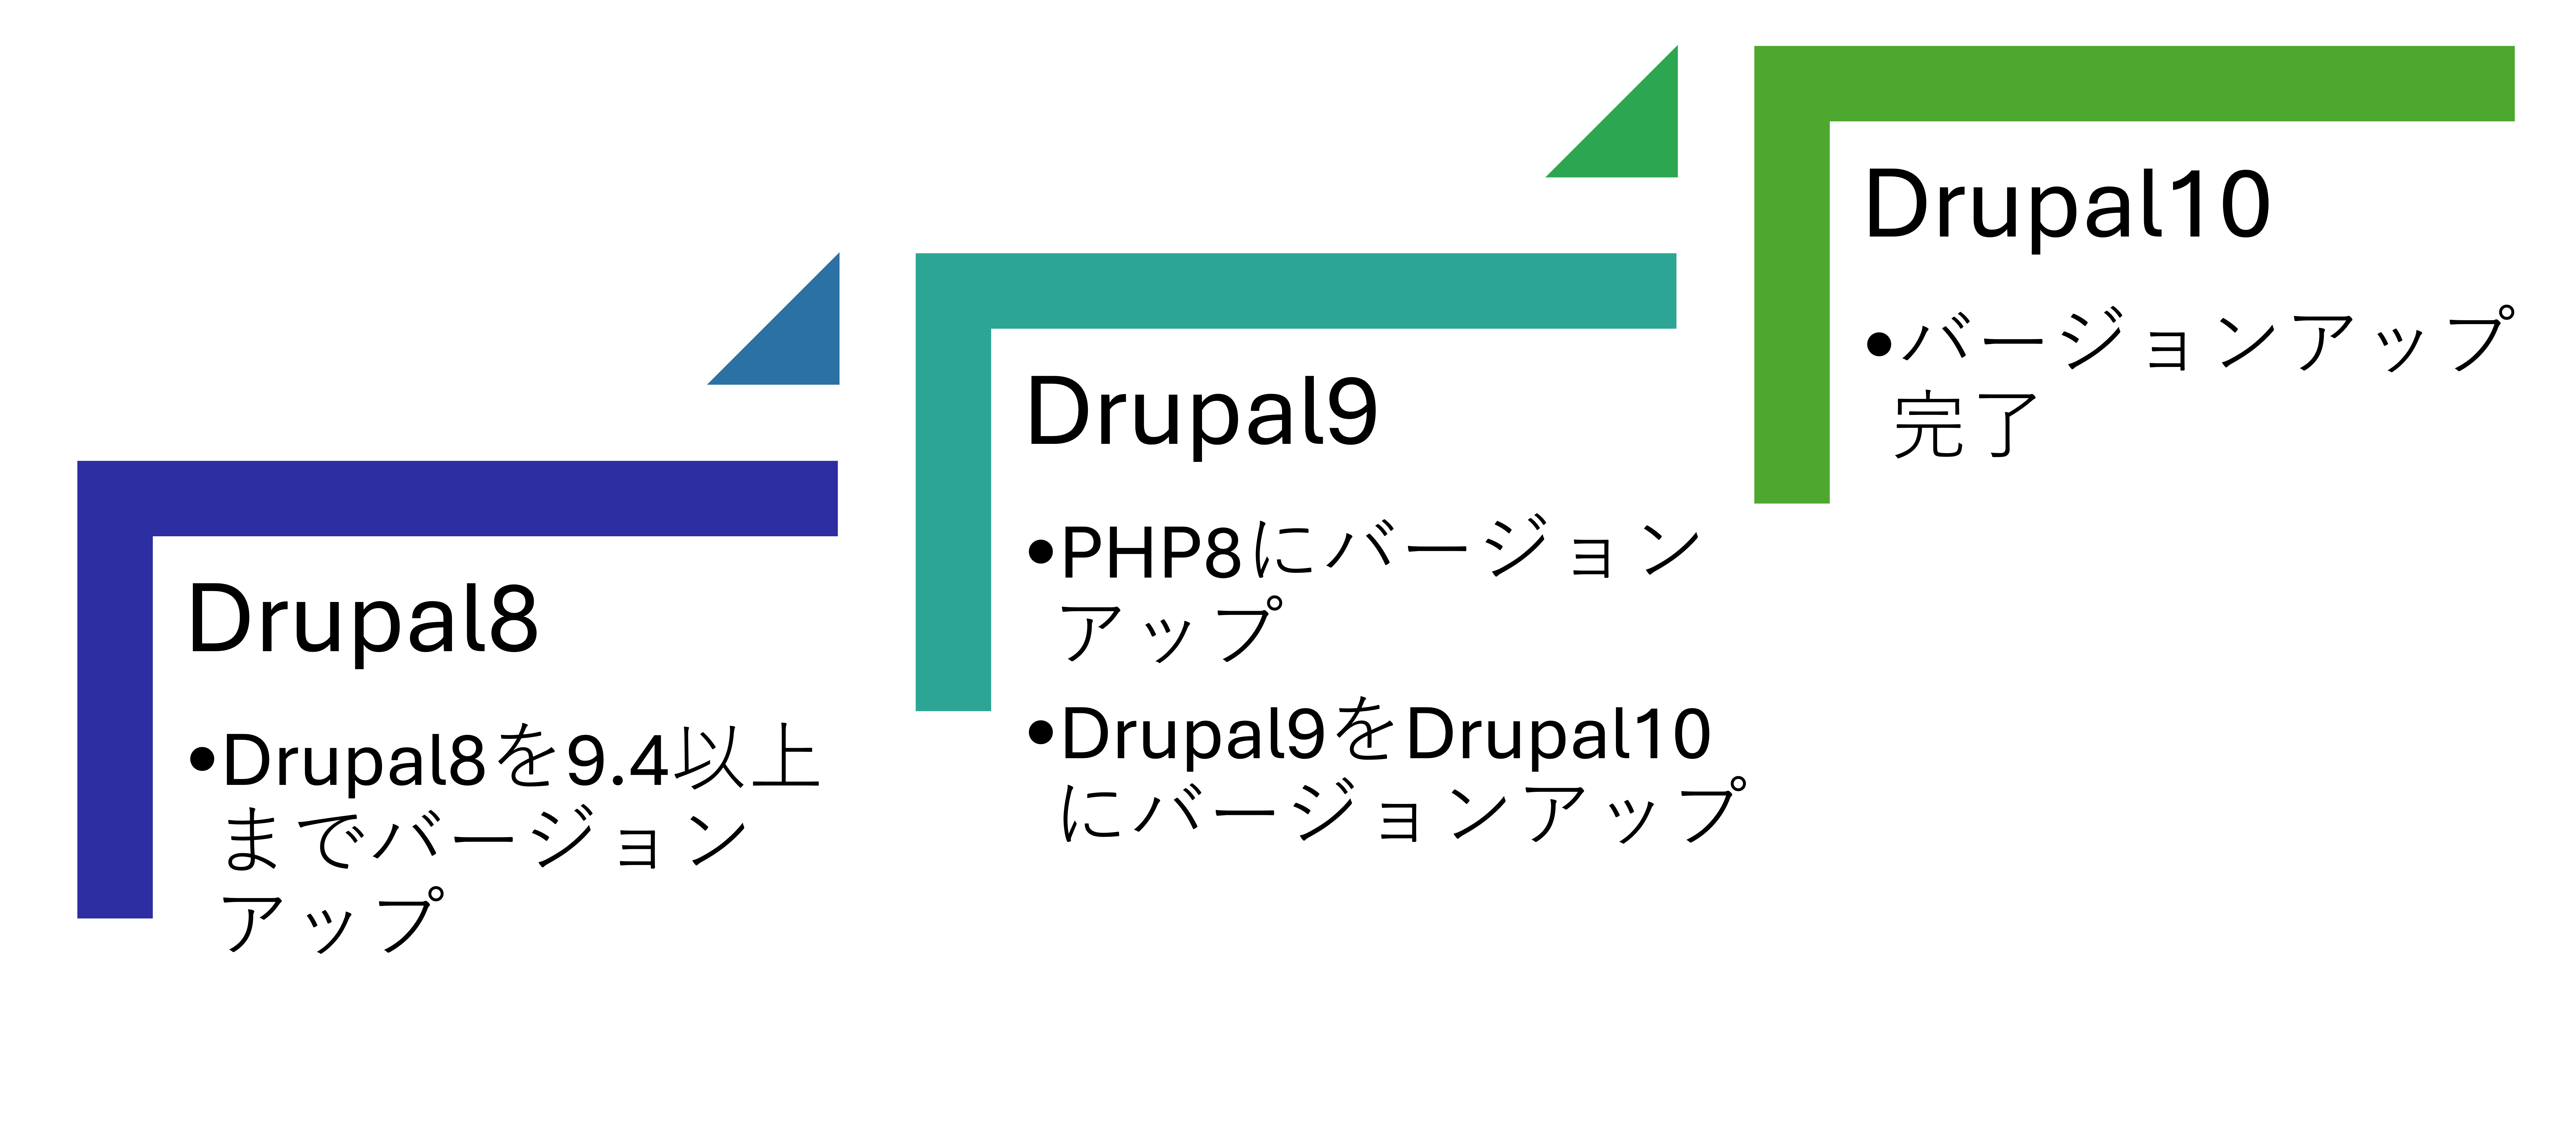 アップグレードの段階 Drupal8→Drupal10